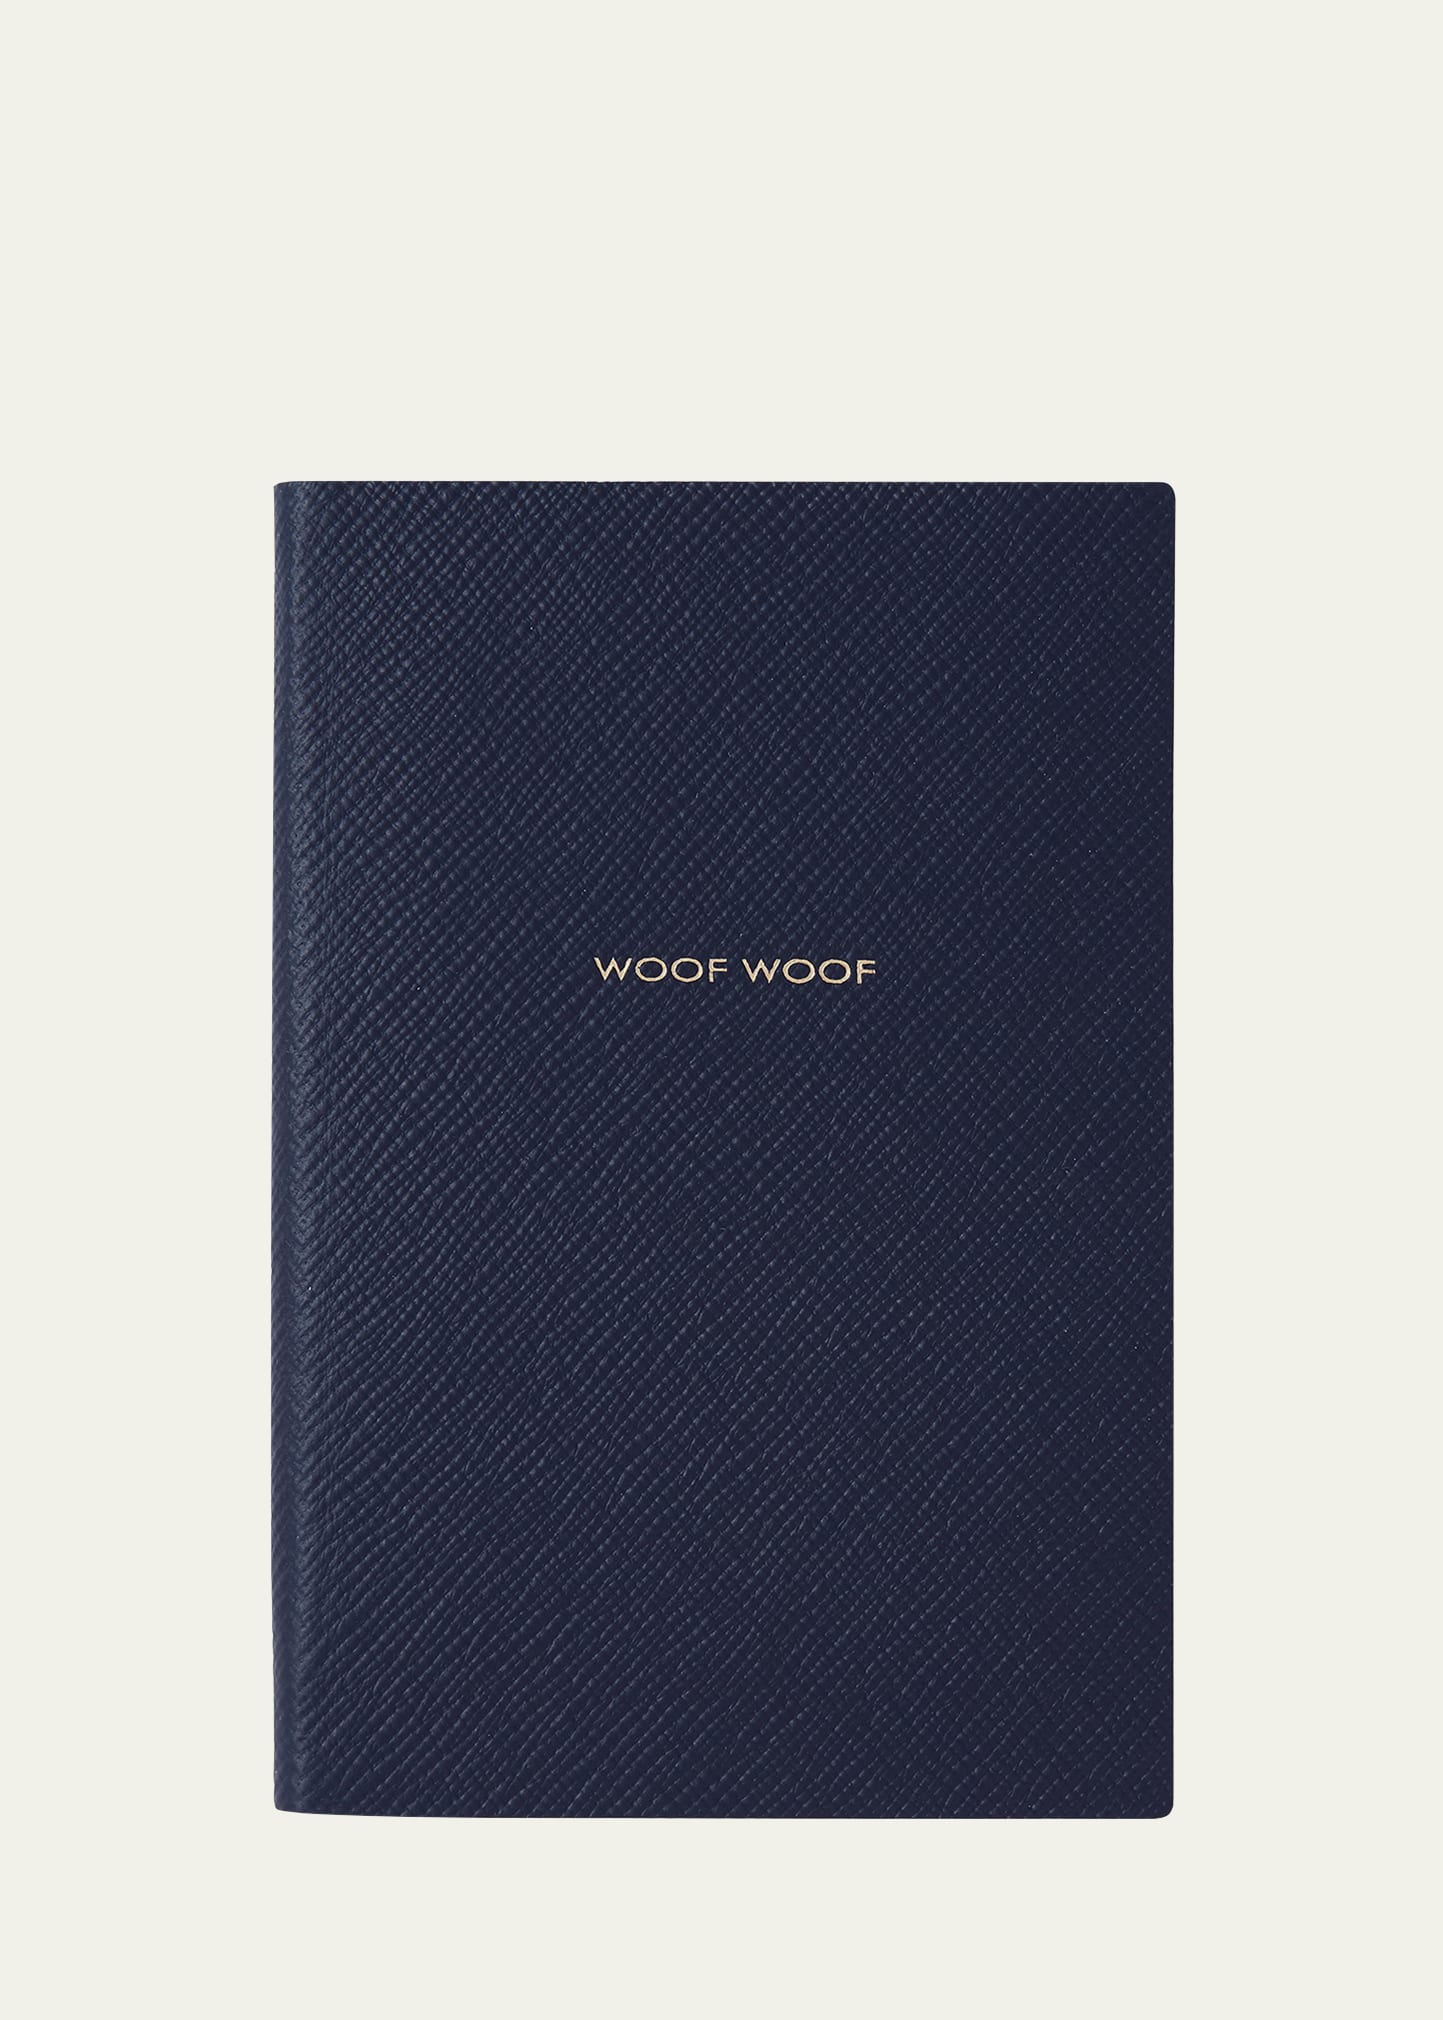 Smythson Chelsea "woof Woof" Cross-grain Leather Notebook In Blue